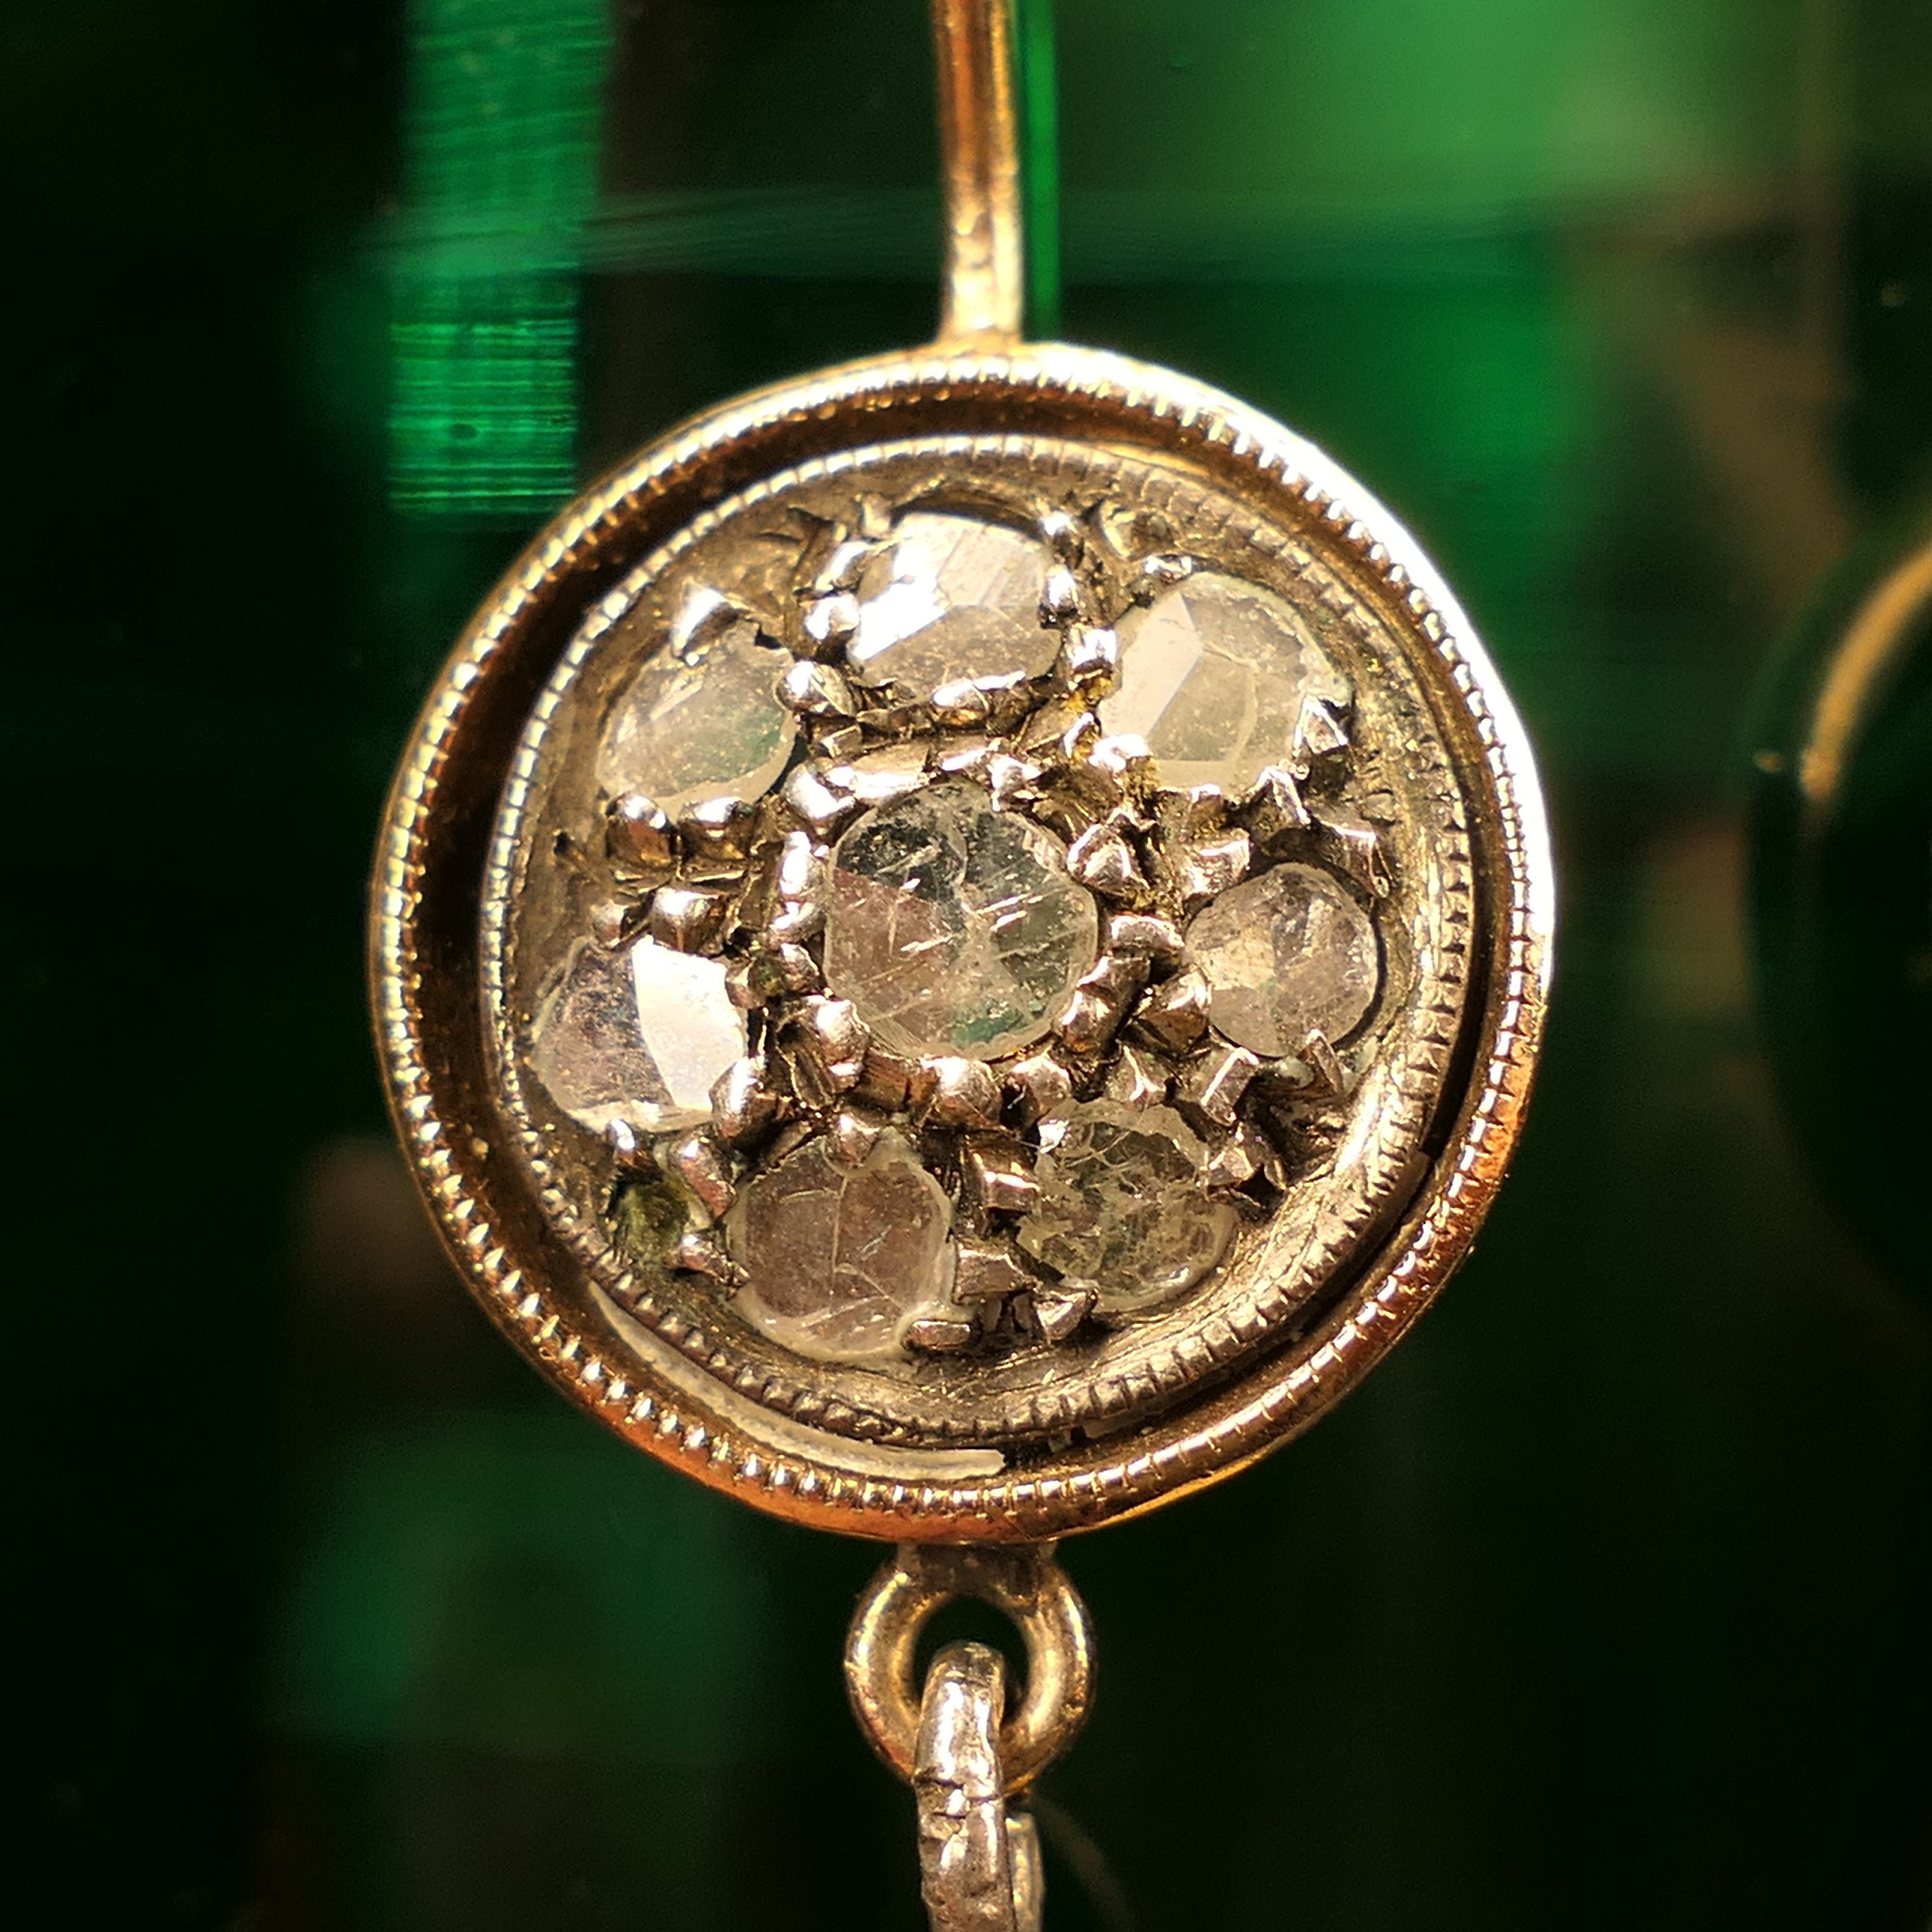 Victorian, Rose Cut Diamond, Peridot, 9ct Gold & Silver Drop Earrings